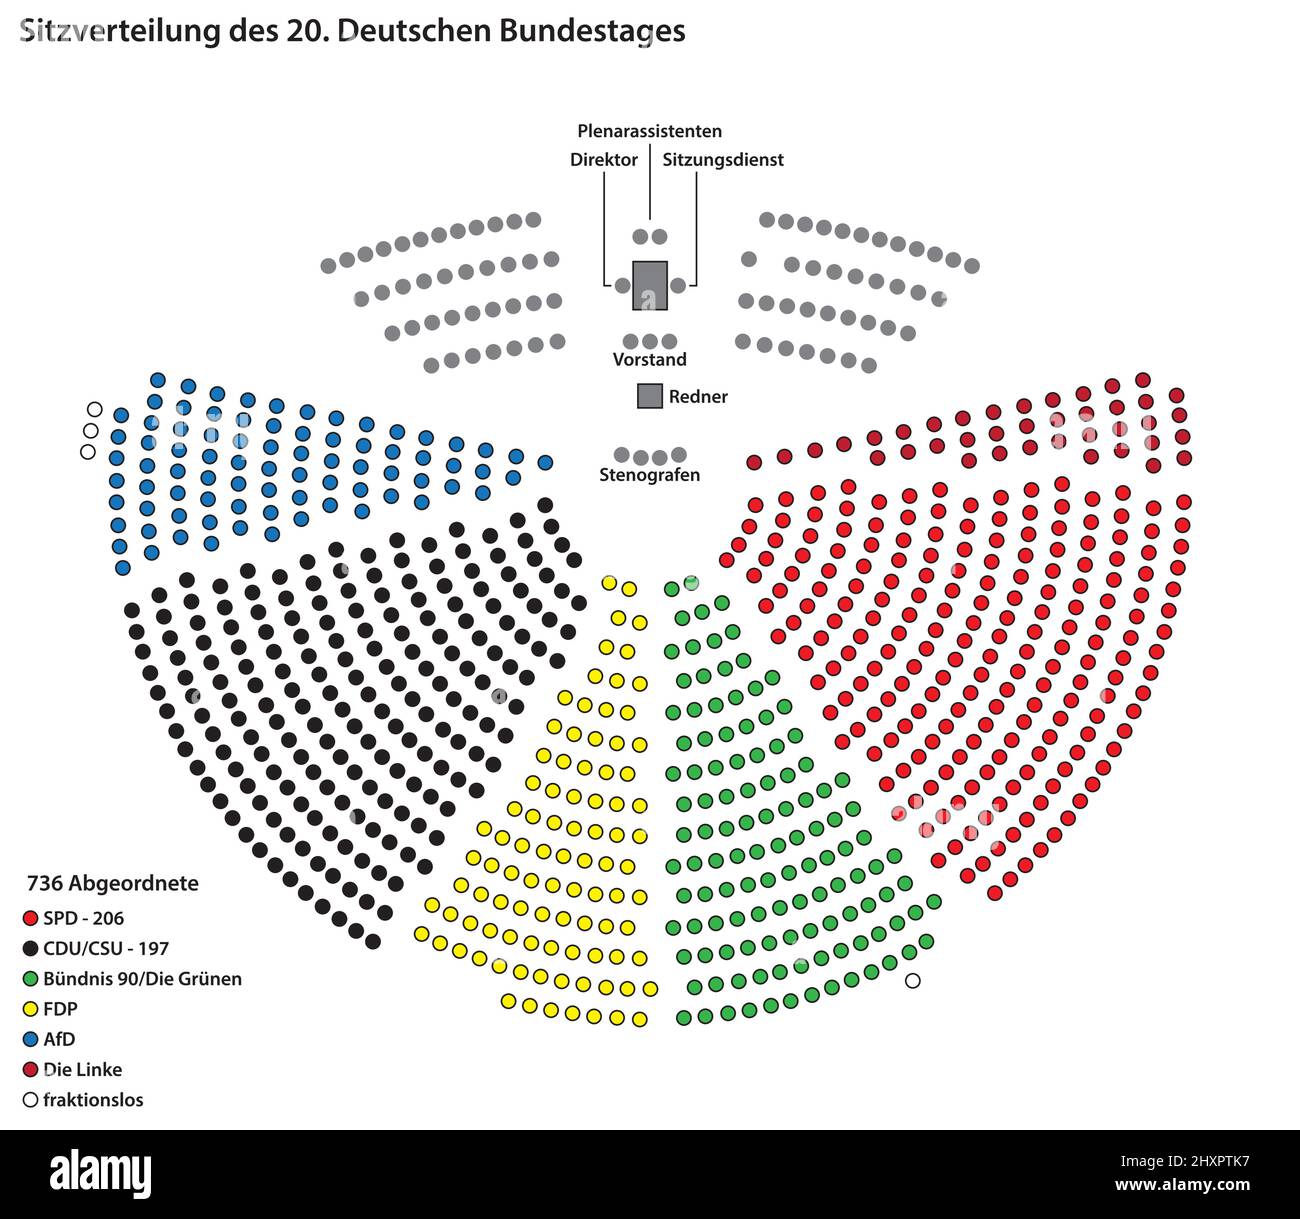 Sitzverteilung der 736 Abgeordneten des Deutschen Bundestages 20. in deutscher Sprache, Berlin Stock Vektor